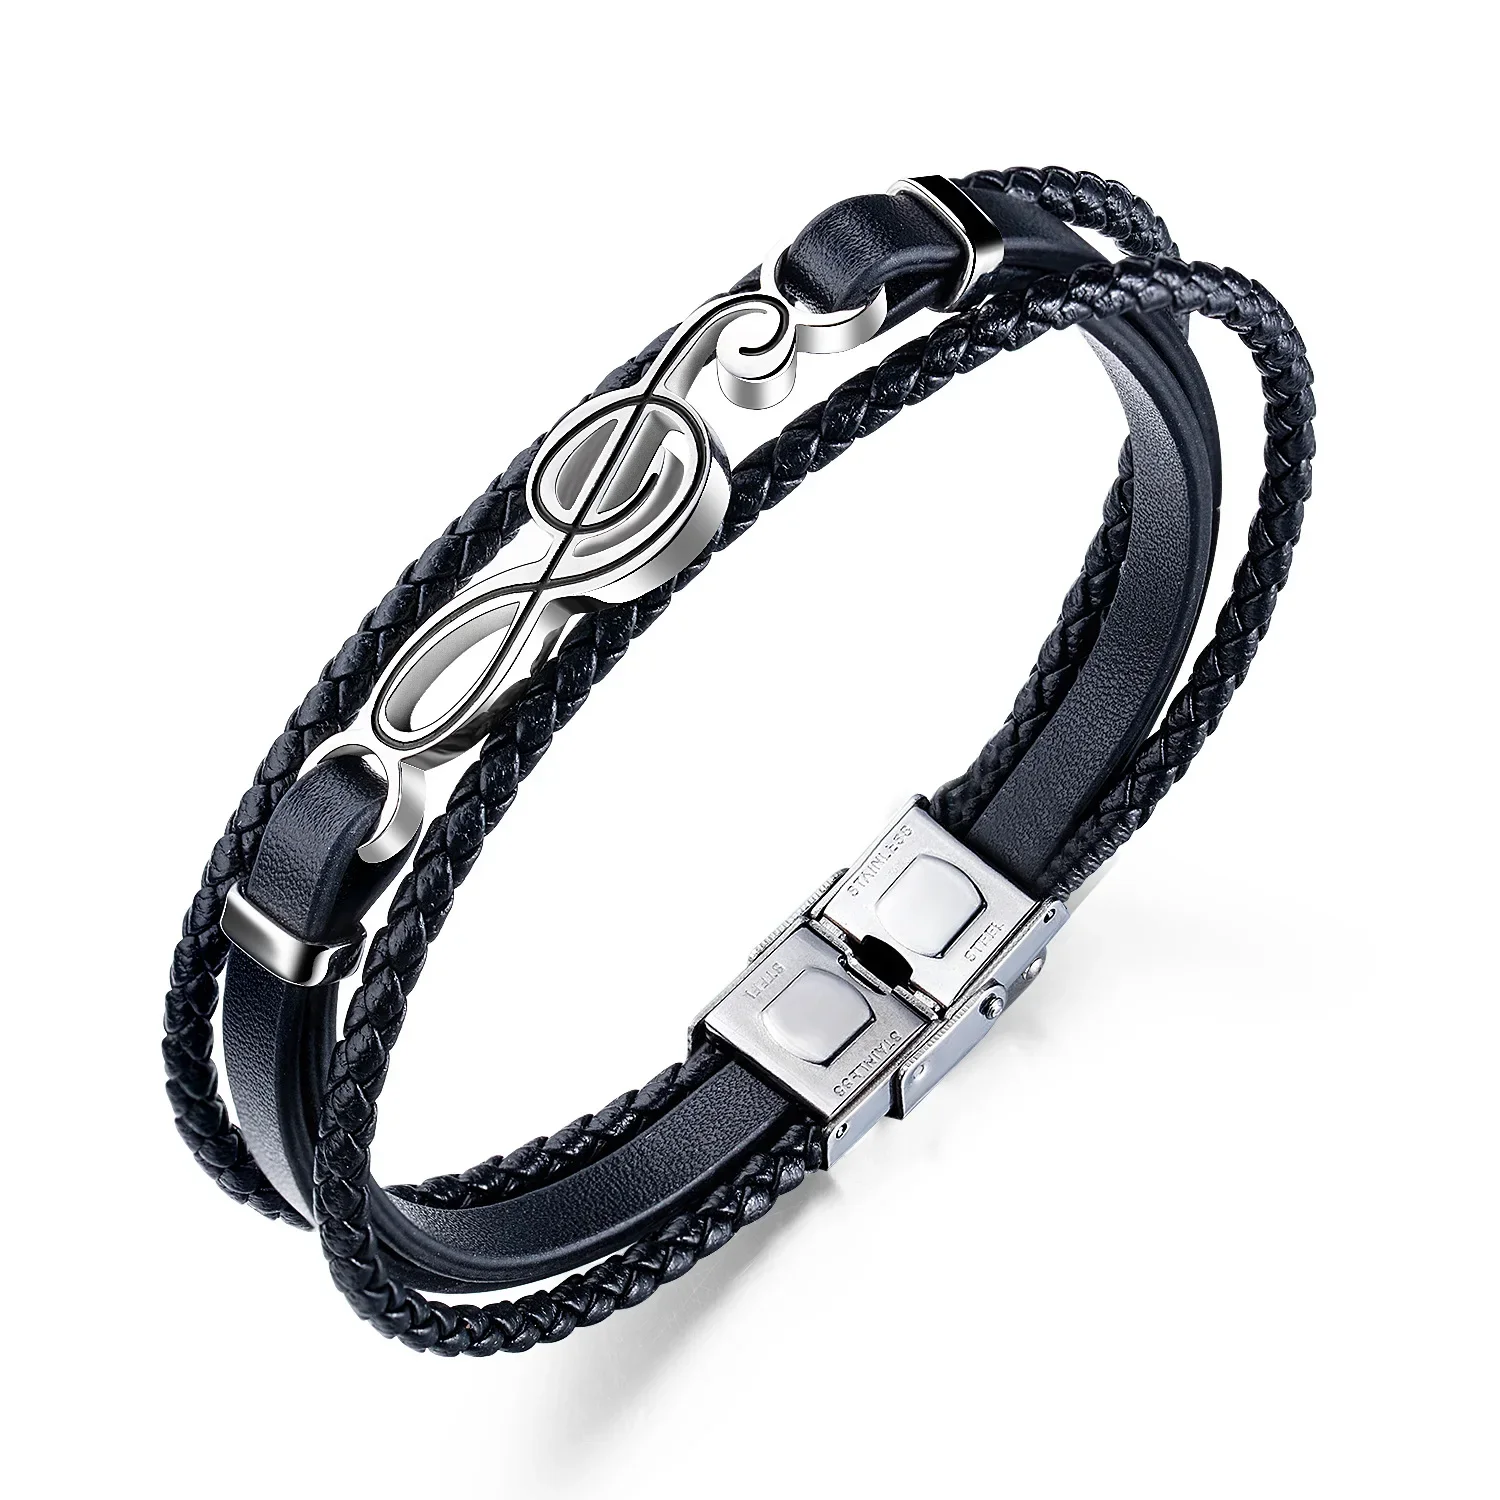 Ppw1 Perlen Armband muti layer geflochtenes Leder Armband für Männer Edelstahl Magnet Armreif Schmuck Geschenk